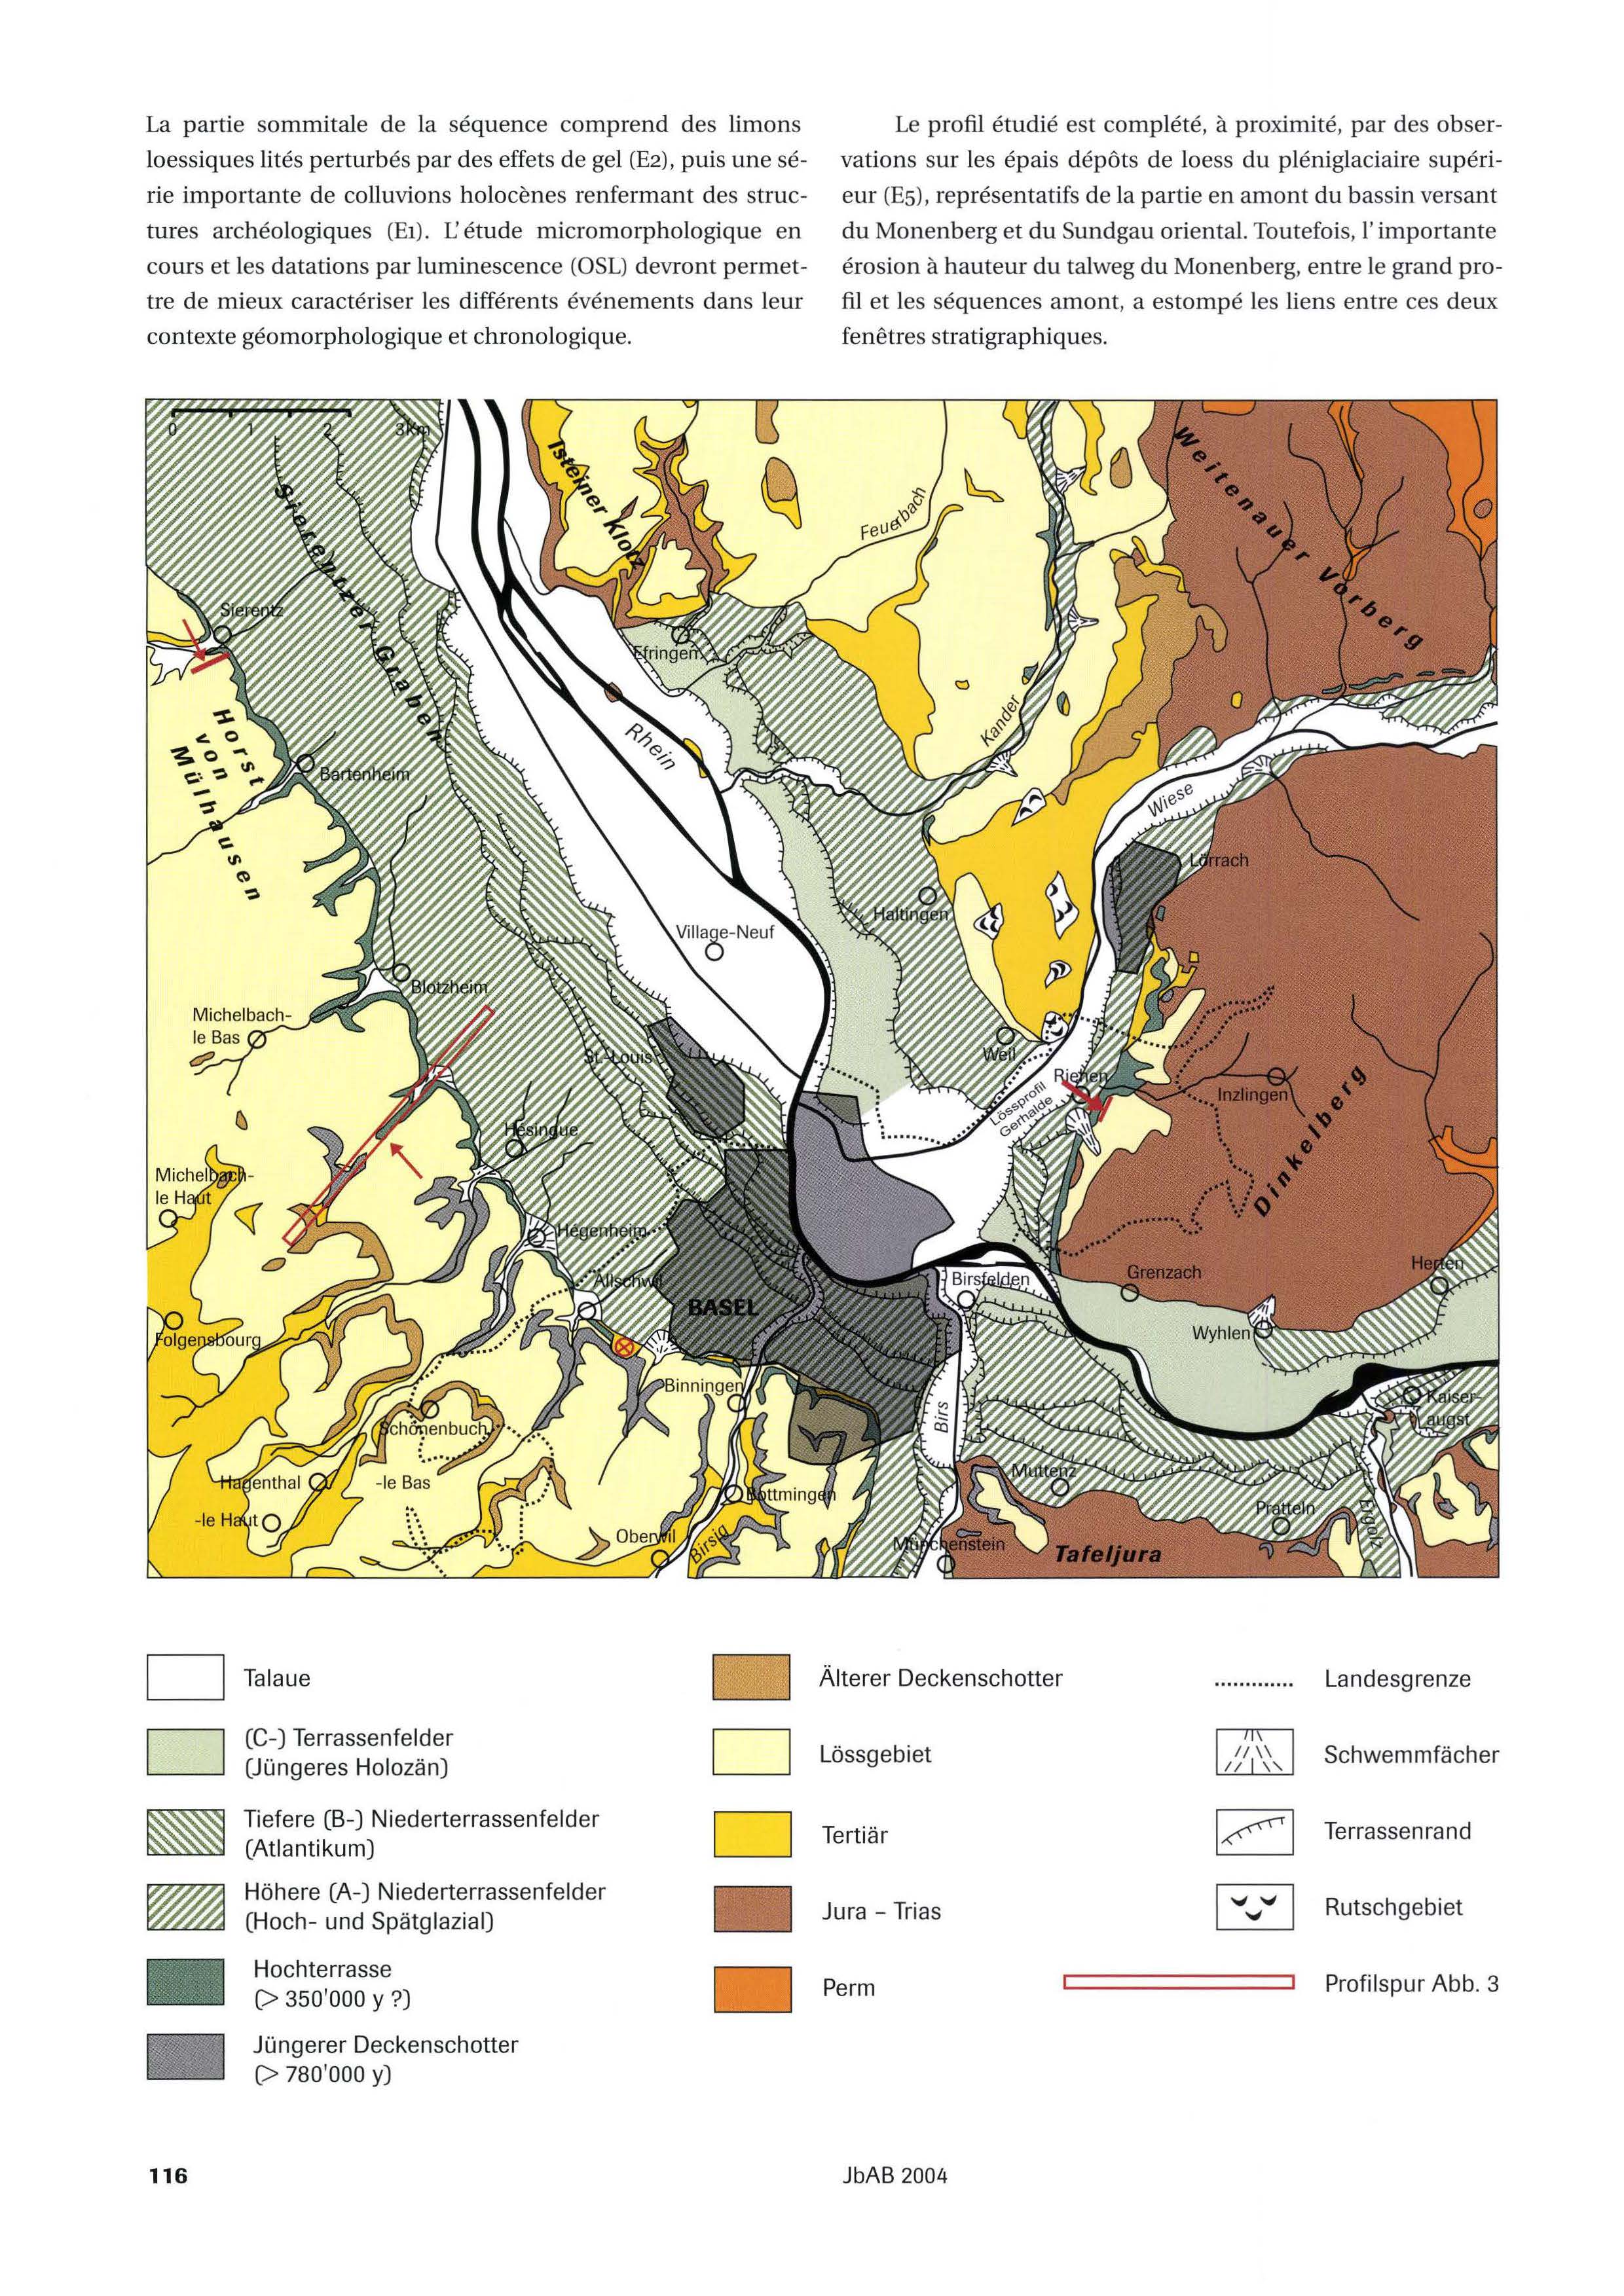 Quartärgeologische Übersichtskarte der Region Basel mit Lokalisation der im Text erwähnten Lössabfolgen von Sierentz Monenberg, Allschwil-Ziegelei und Riehen-Gerhalde